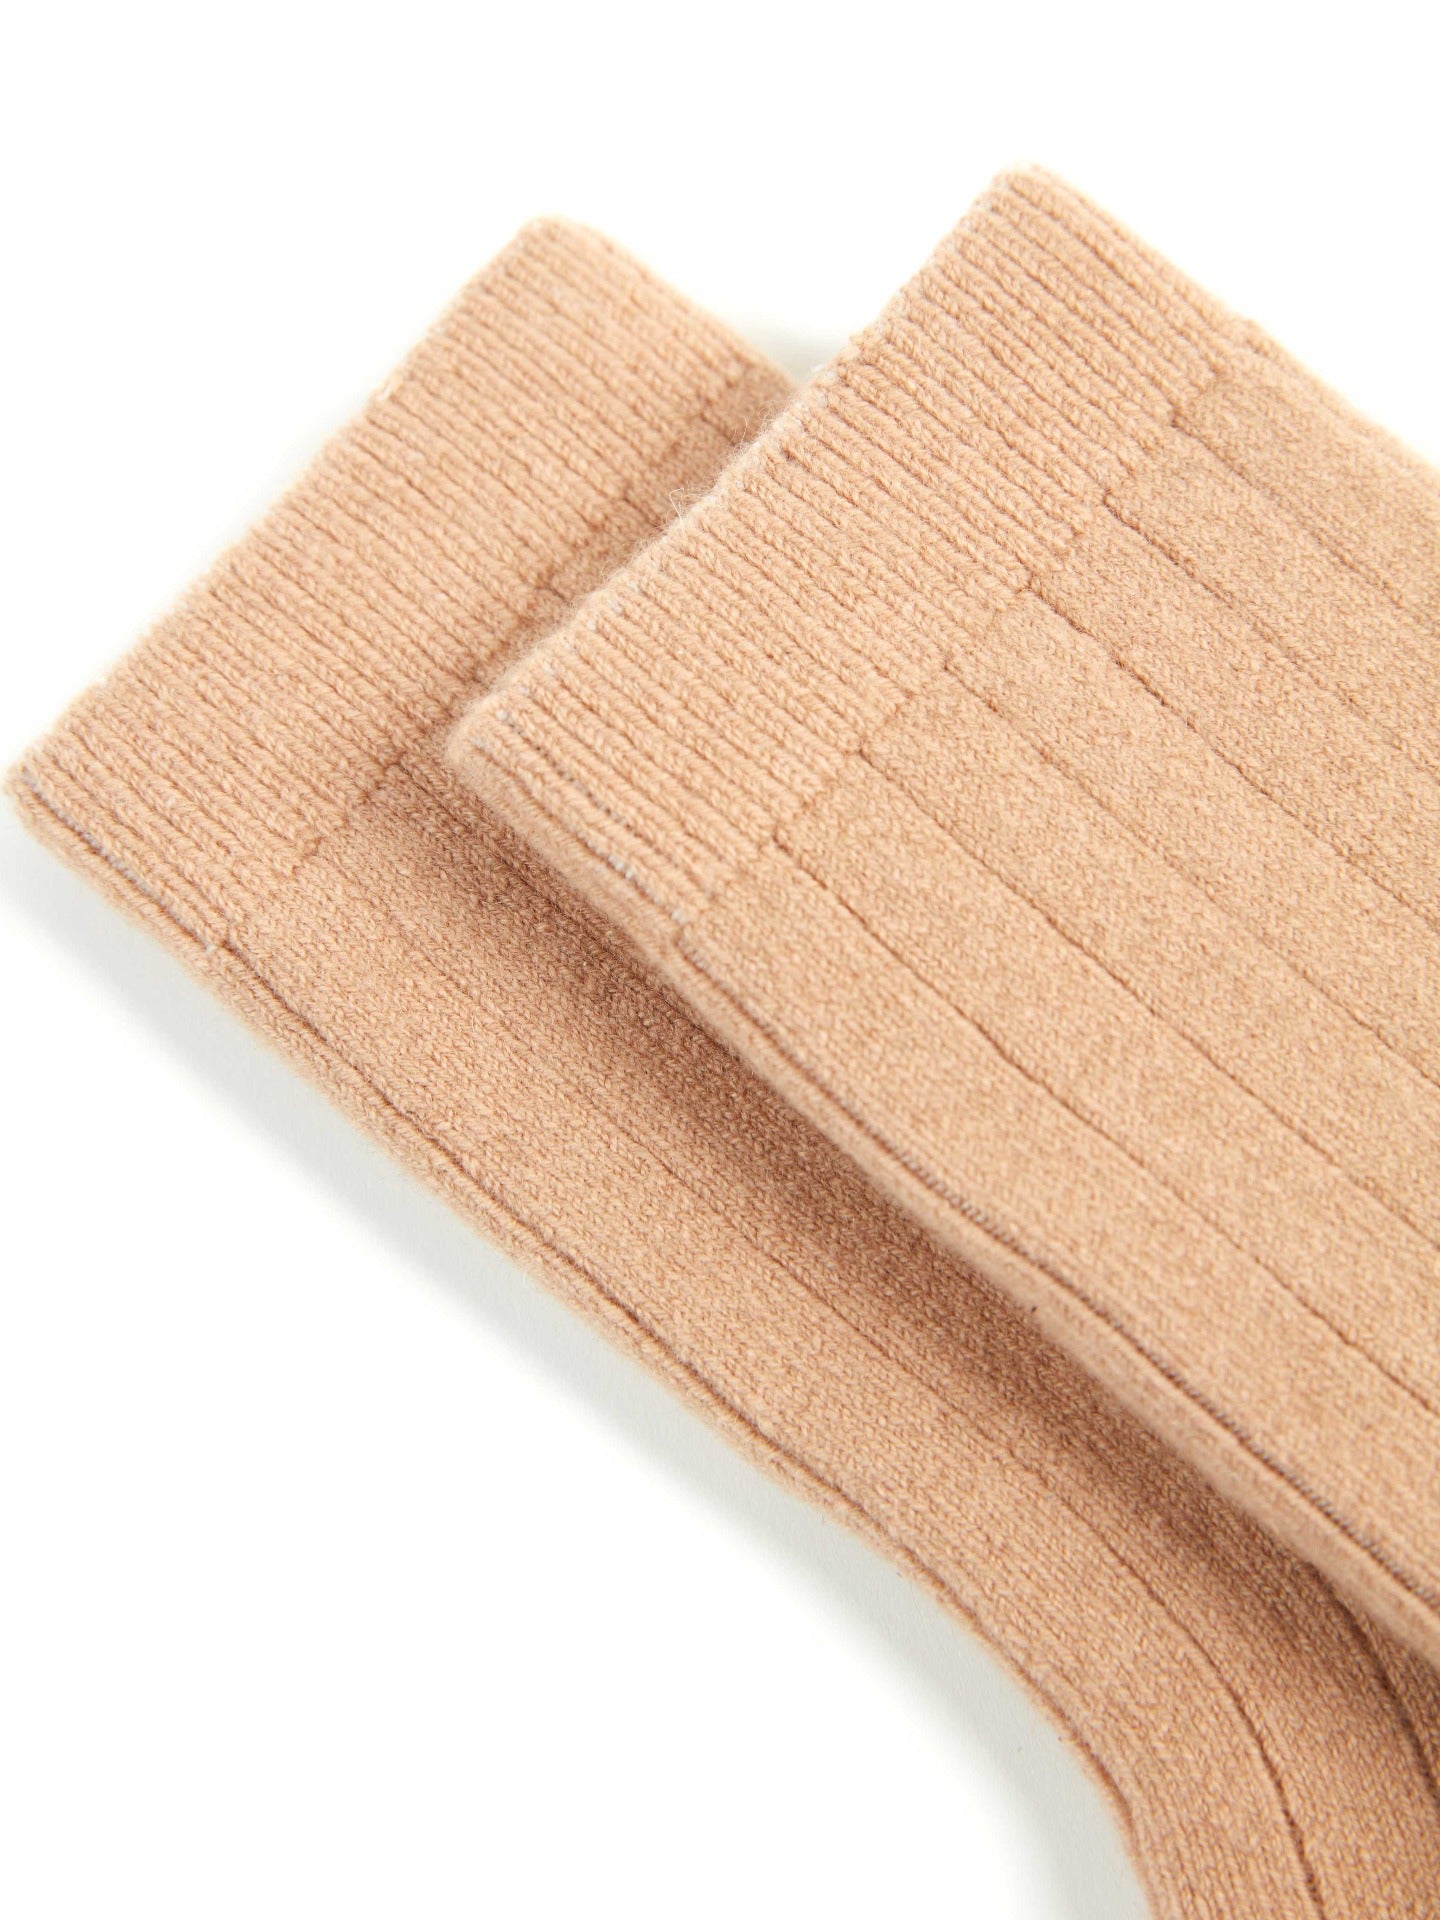 Unisex Cashmere Trim Knit Bed Socks Light Camel - Gobi Cashmere